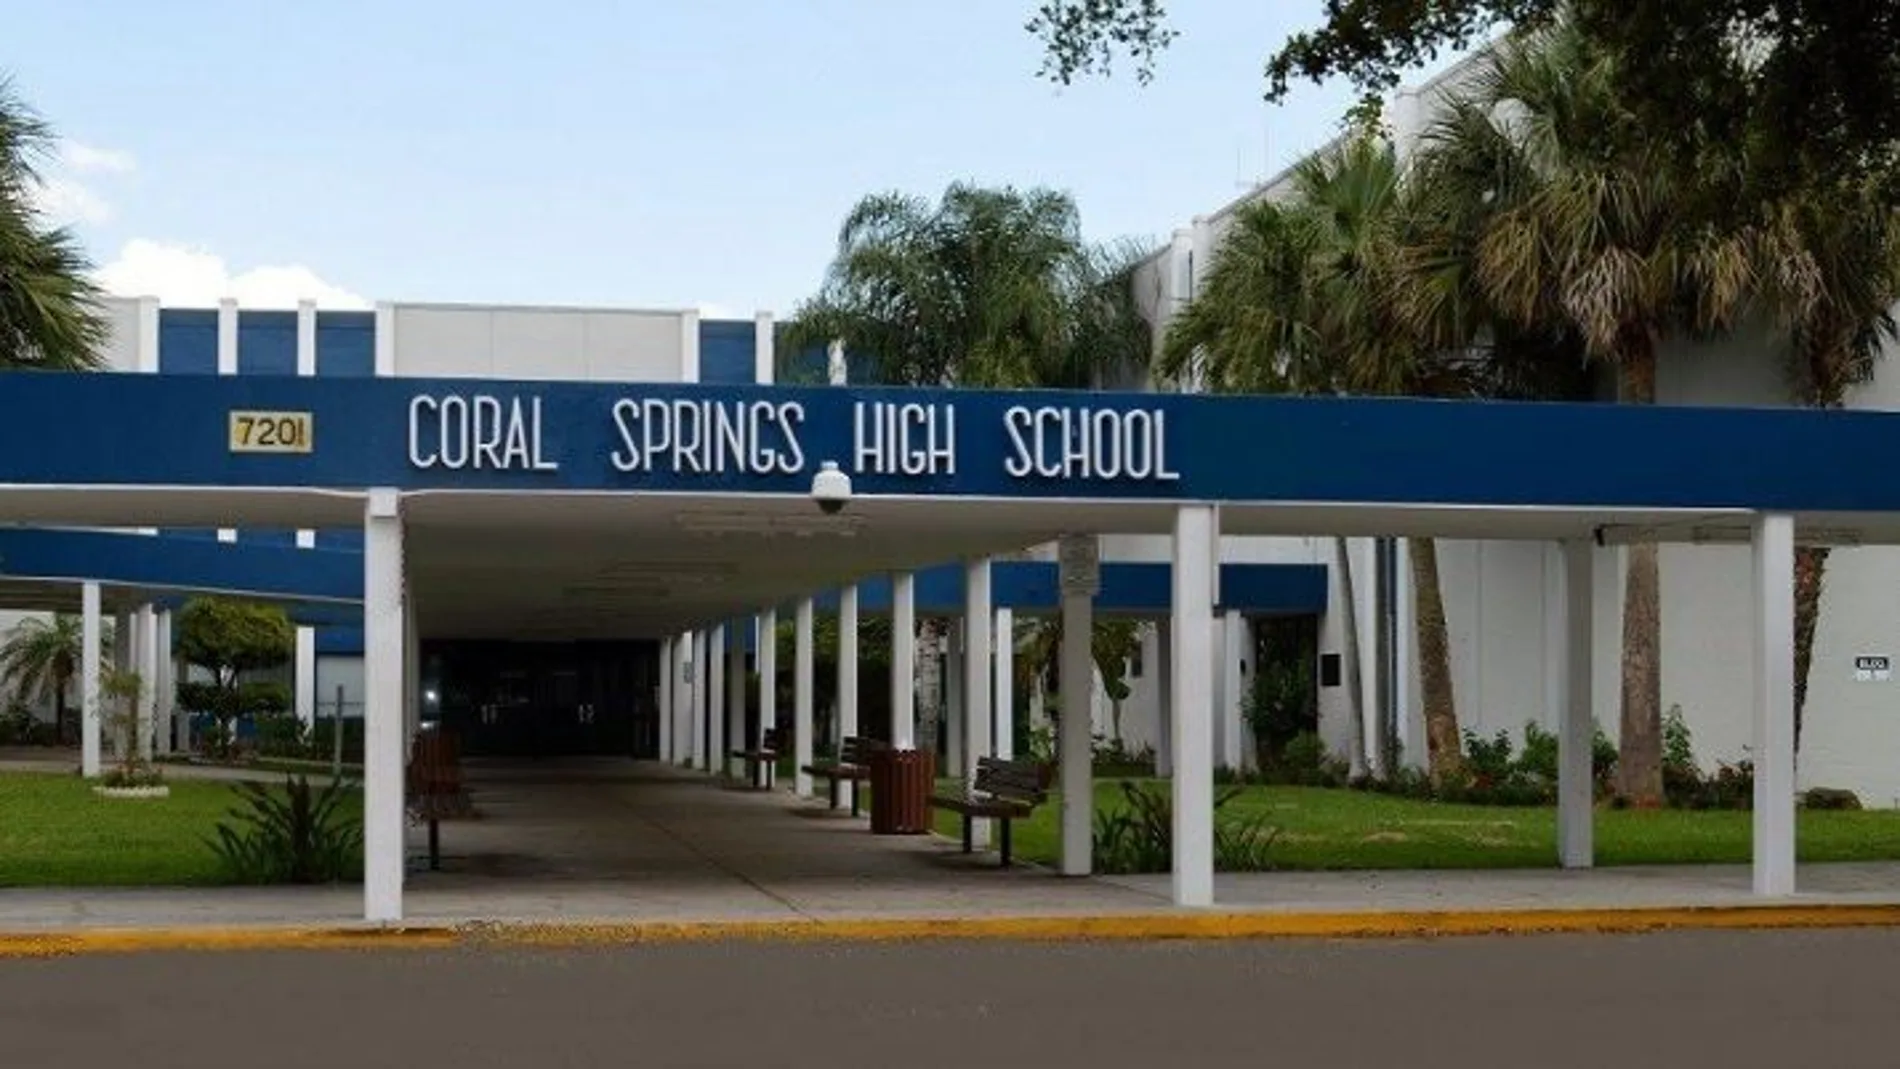 Tres jóvenes detenidos por un supuesto plan de matanza en una escuela de Florida